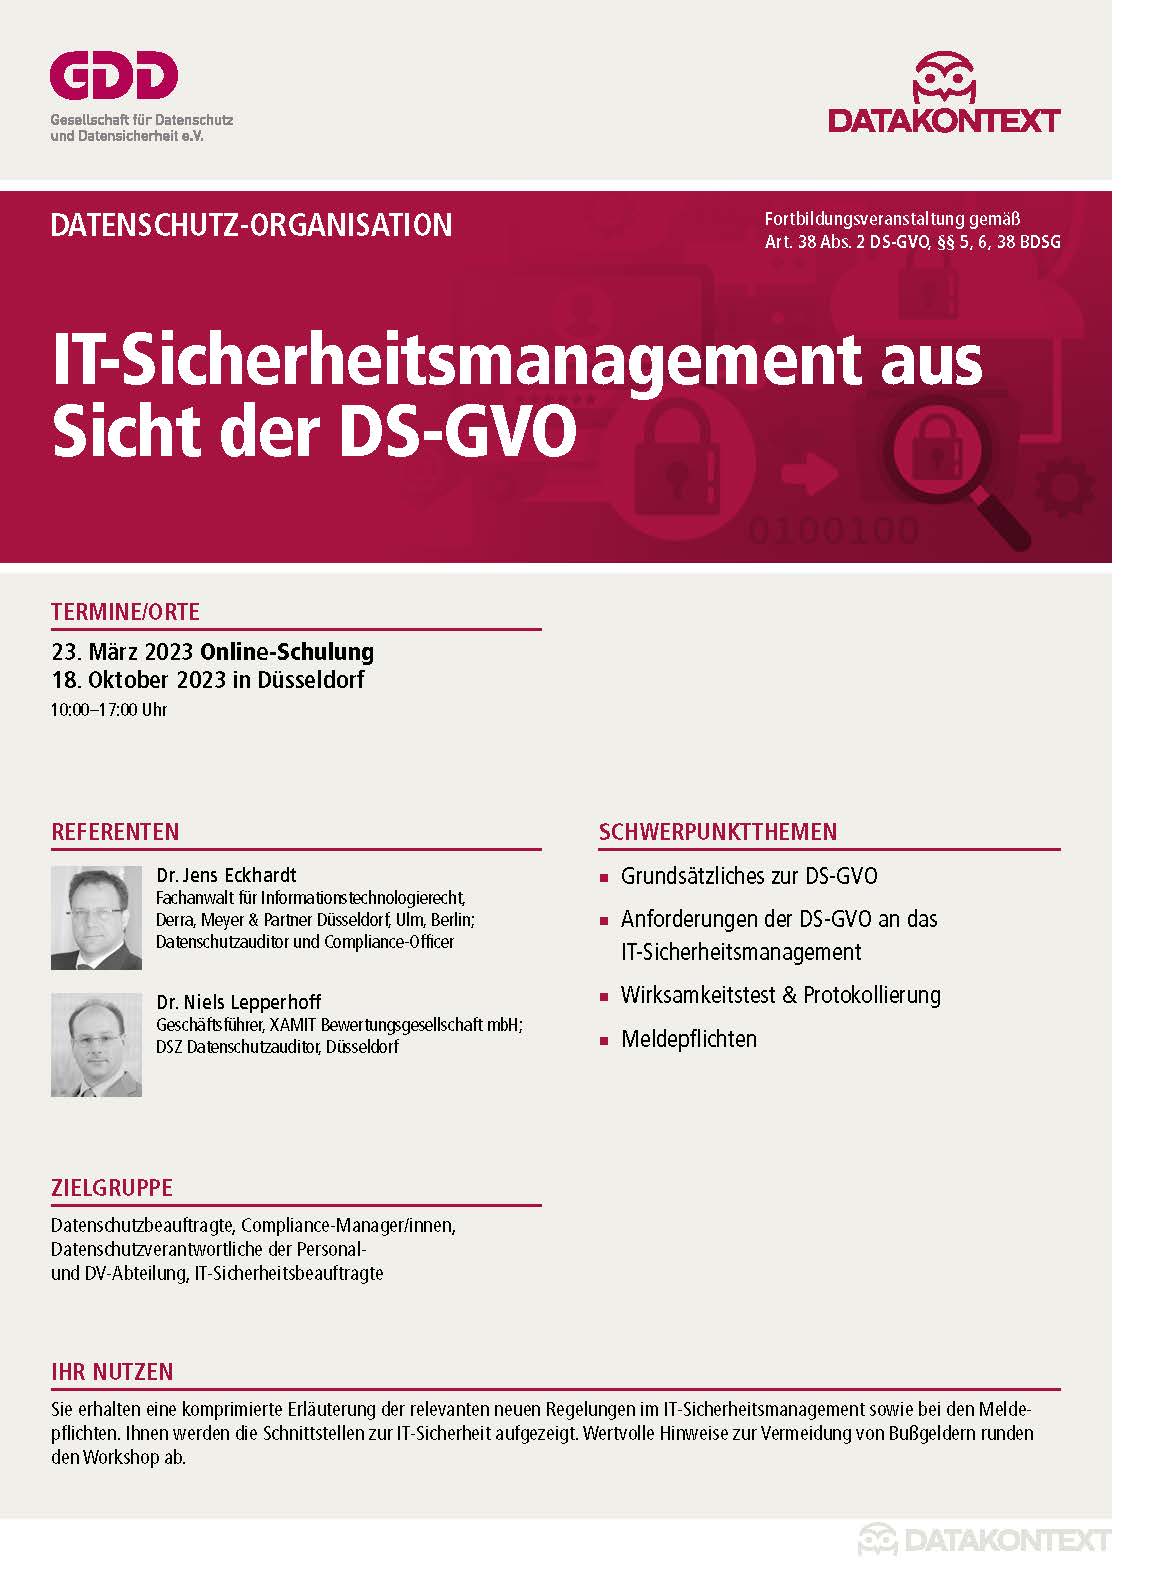 IT-Sicherheitsmanagement aus Sicht der DS-GVO